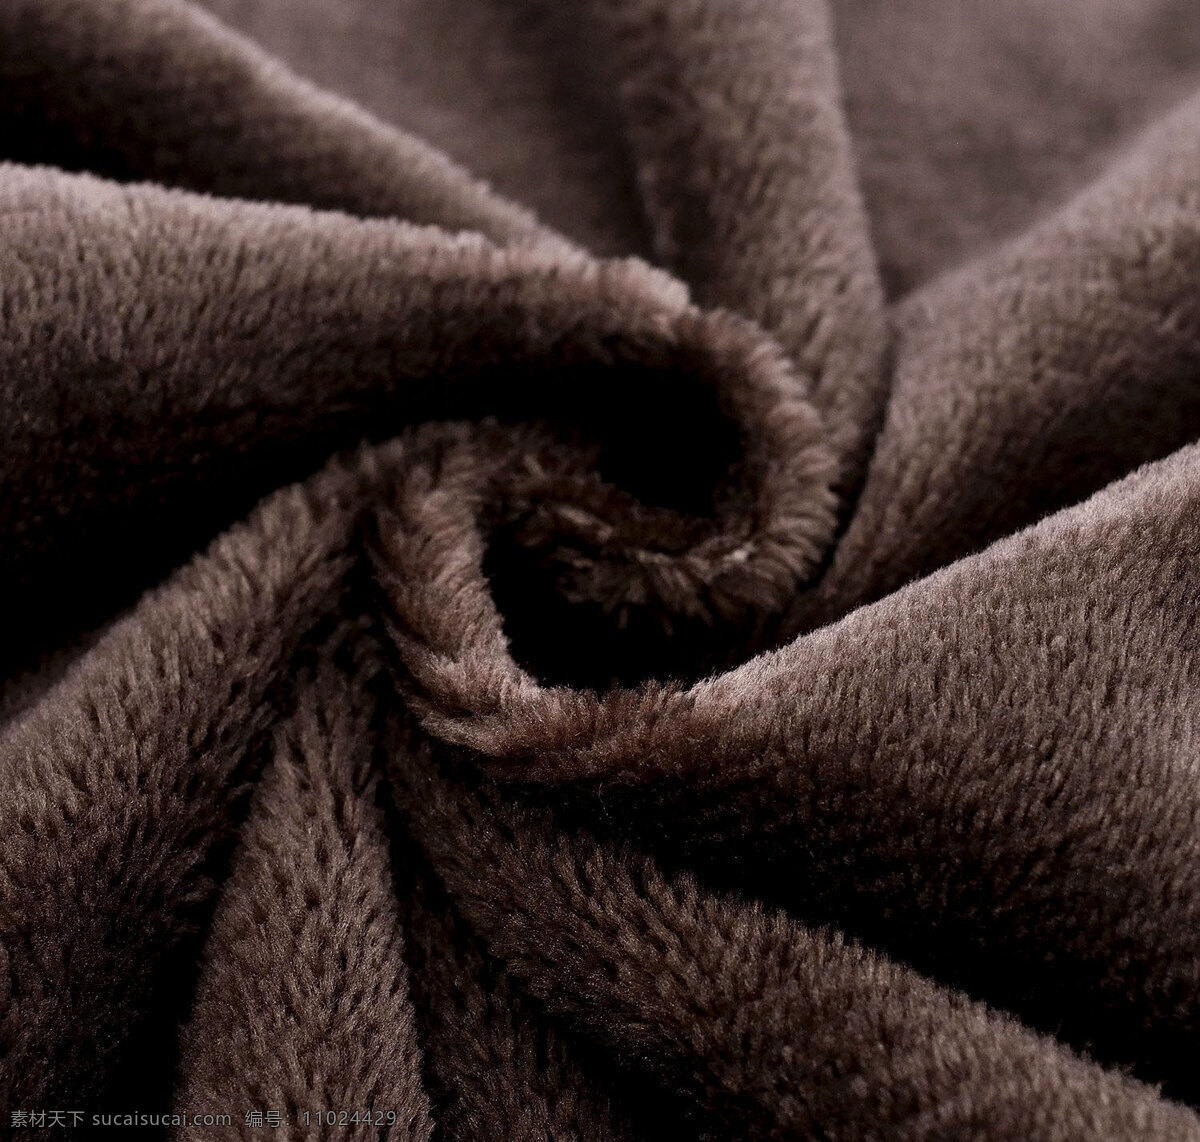 绒毛布料 绒毛 布料 材质 深色 巧克力色 咖啡色 生活百科 家居生活